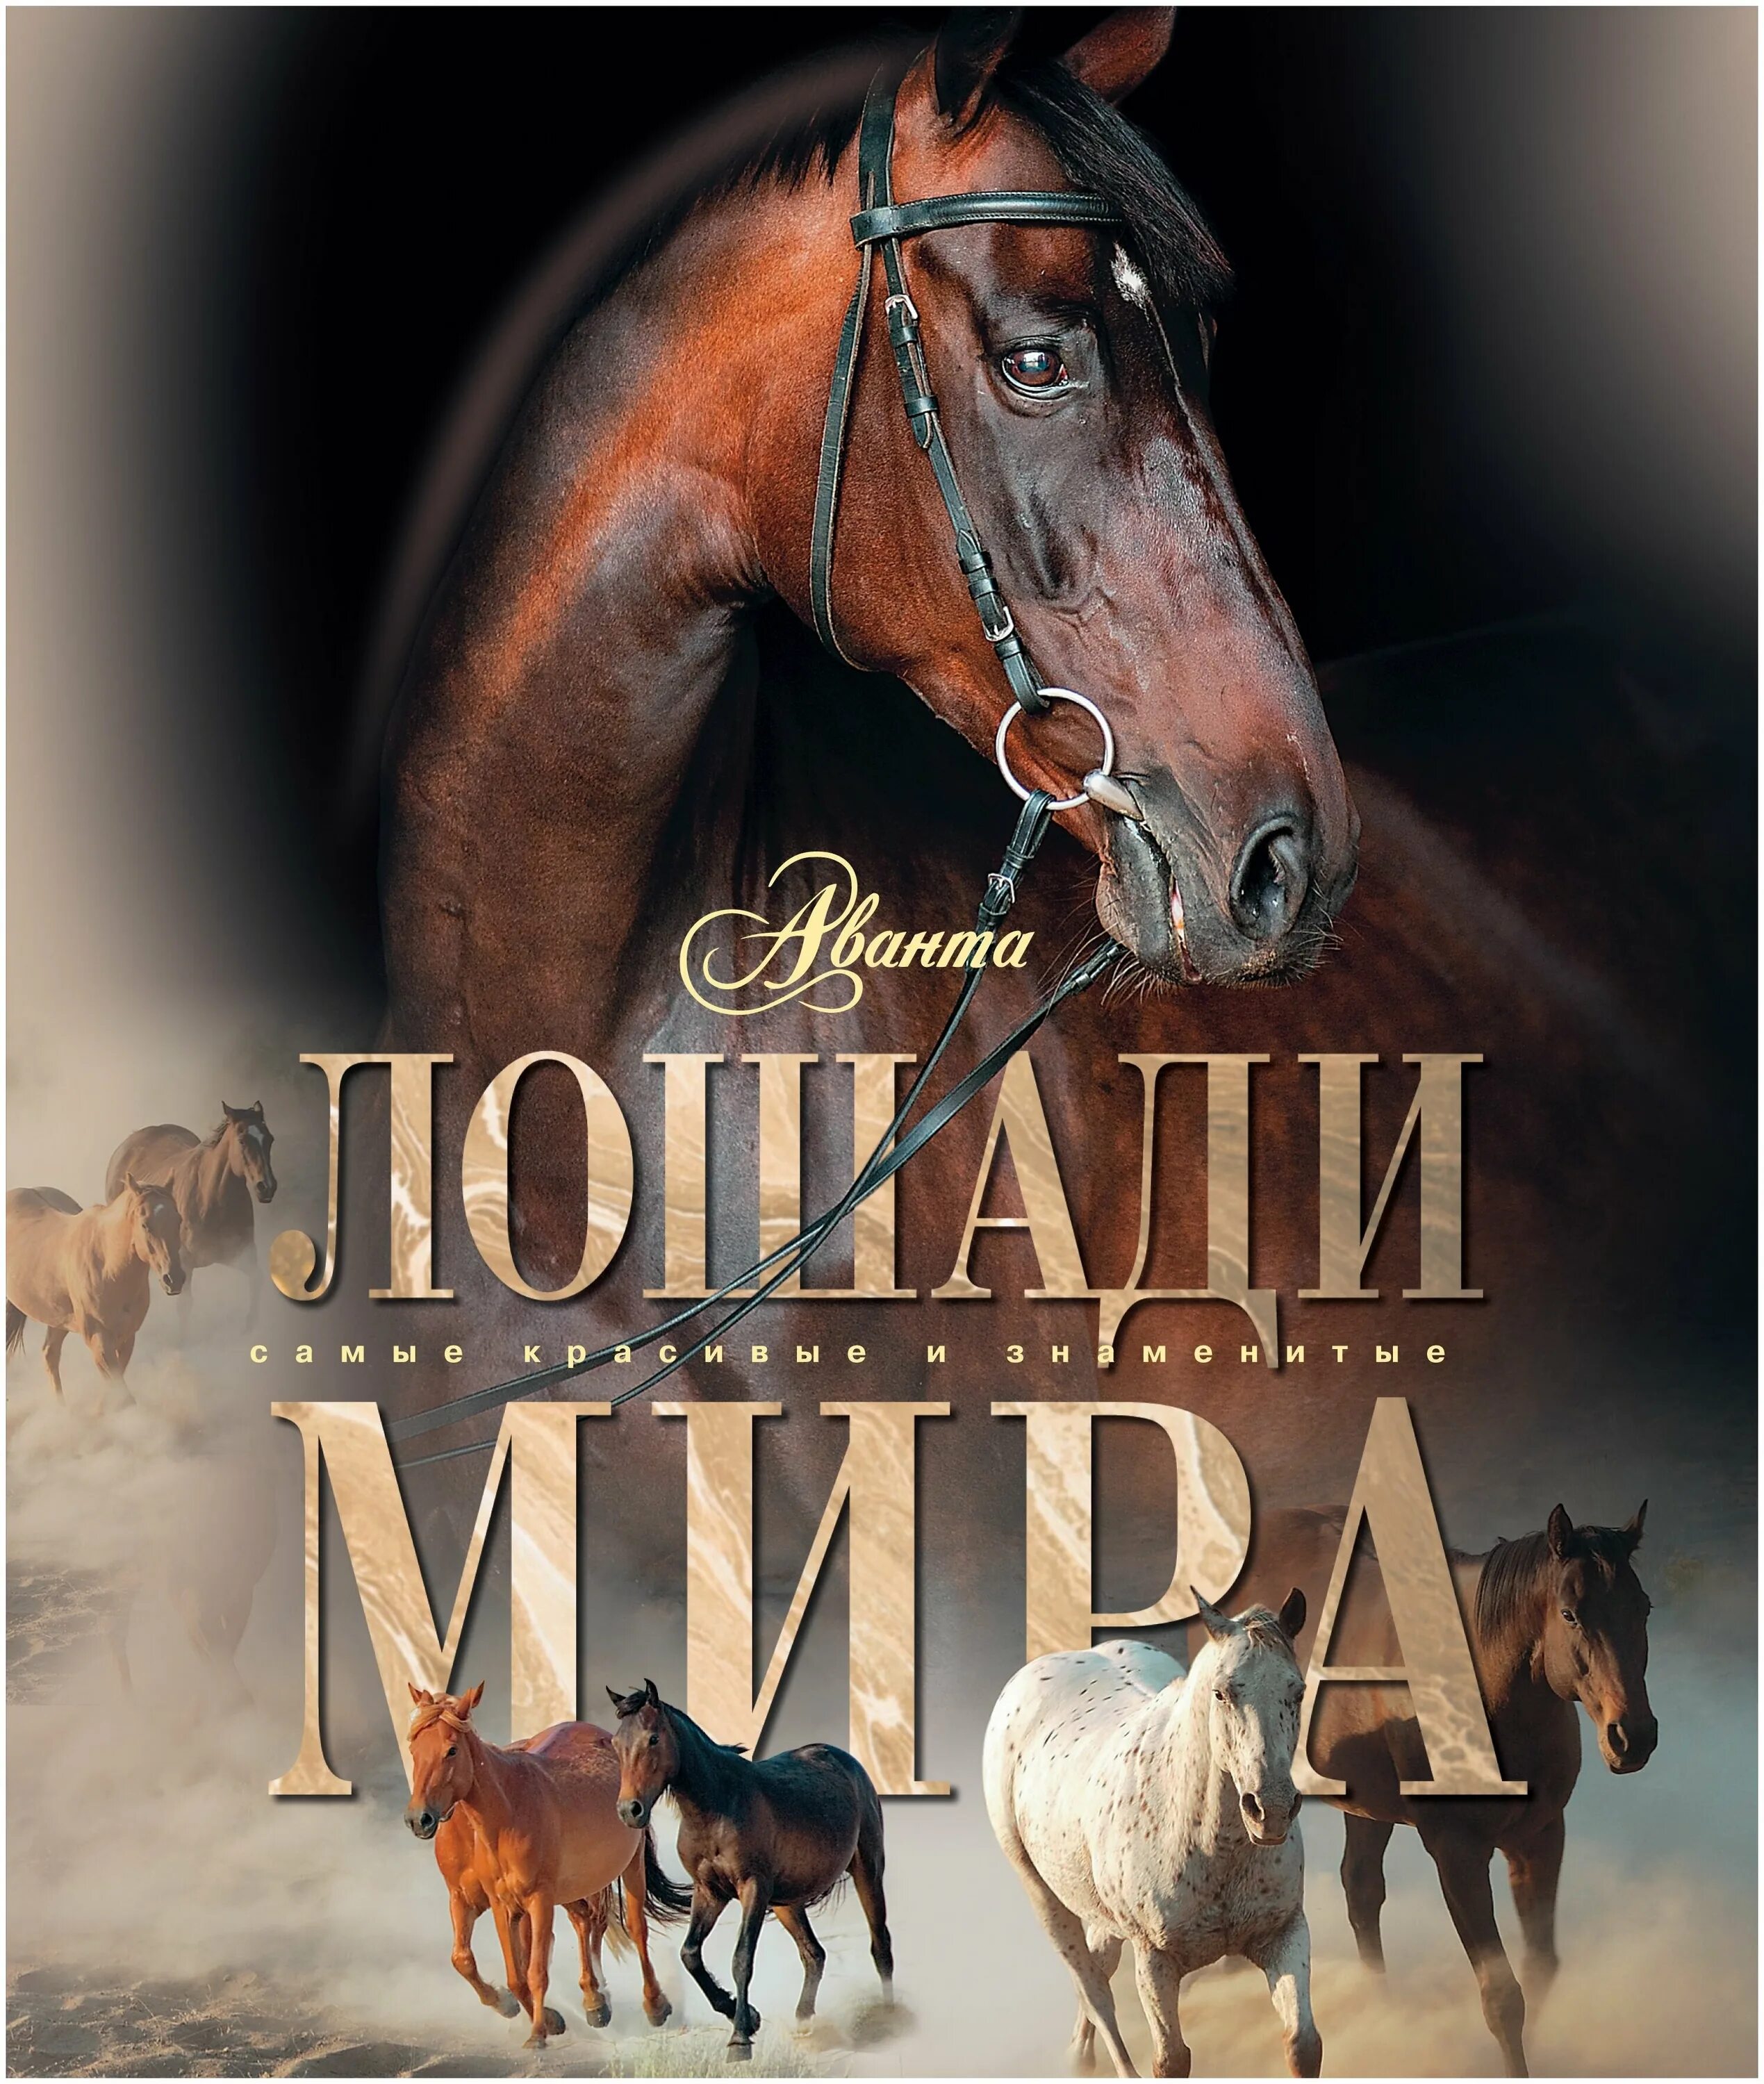 Купить книгу лошади. Книги про лошадей. Лошади: энциклопедия. Книги про лошадей Художественные. Обложка книги с лошадью.